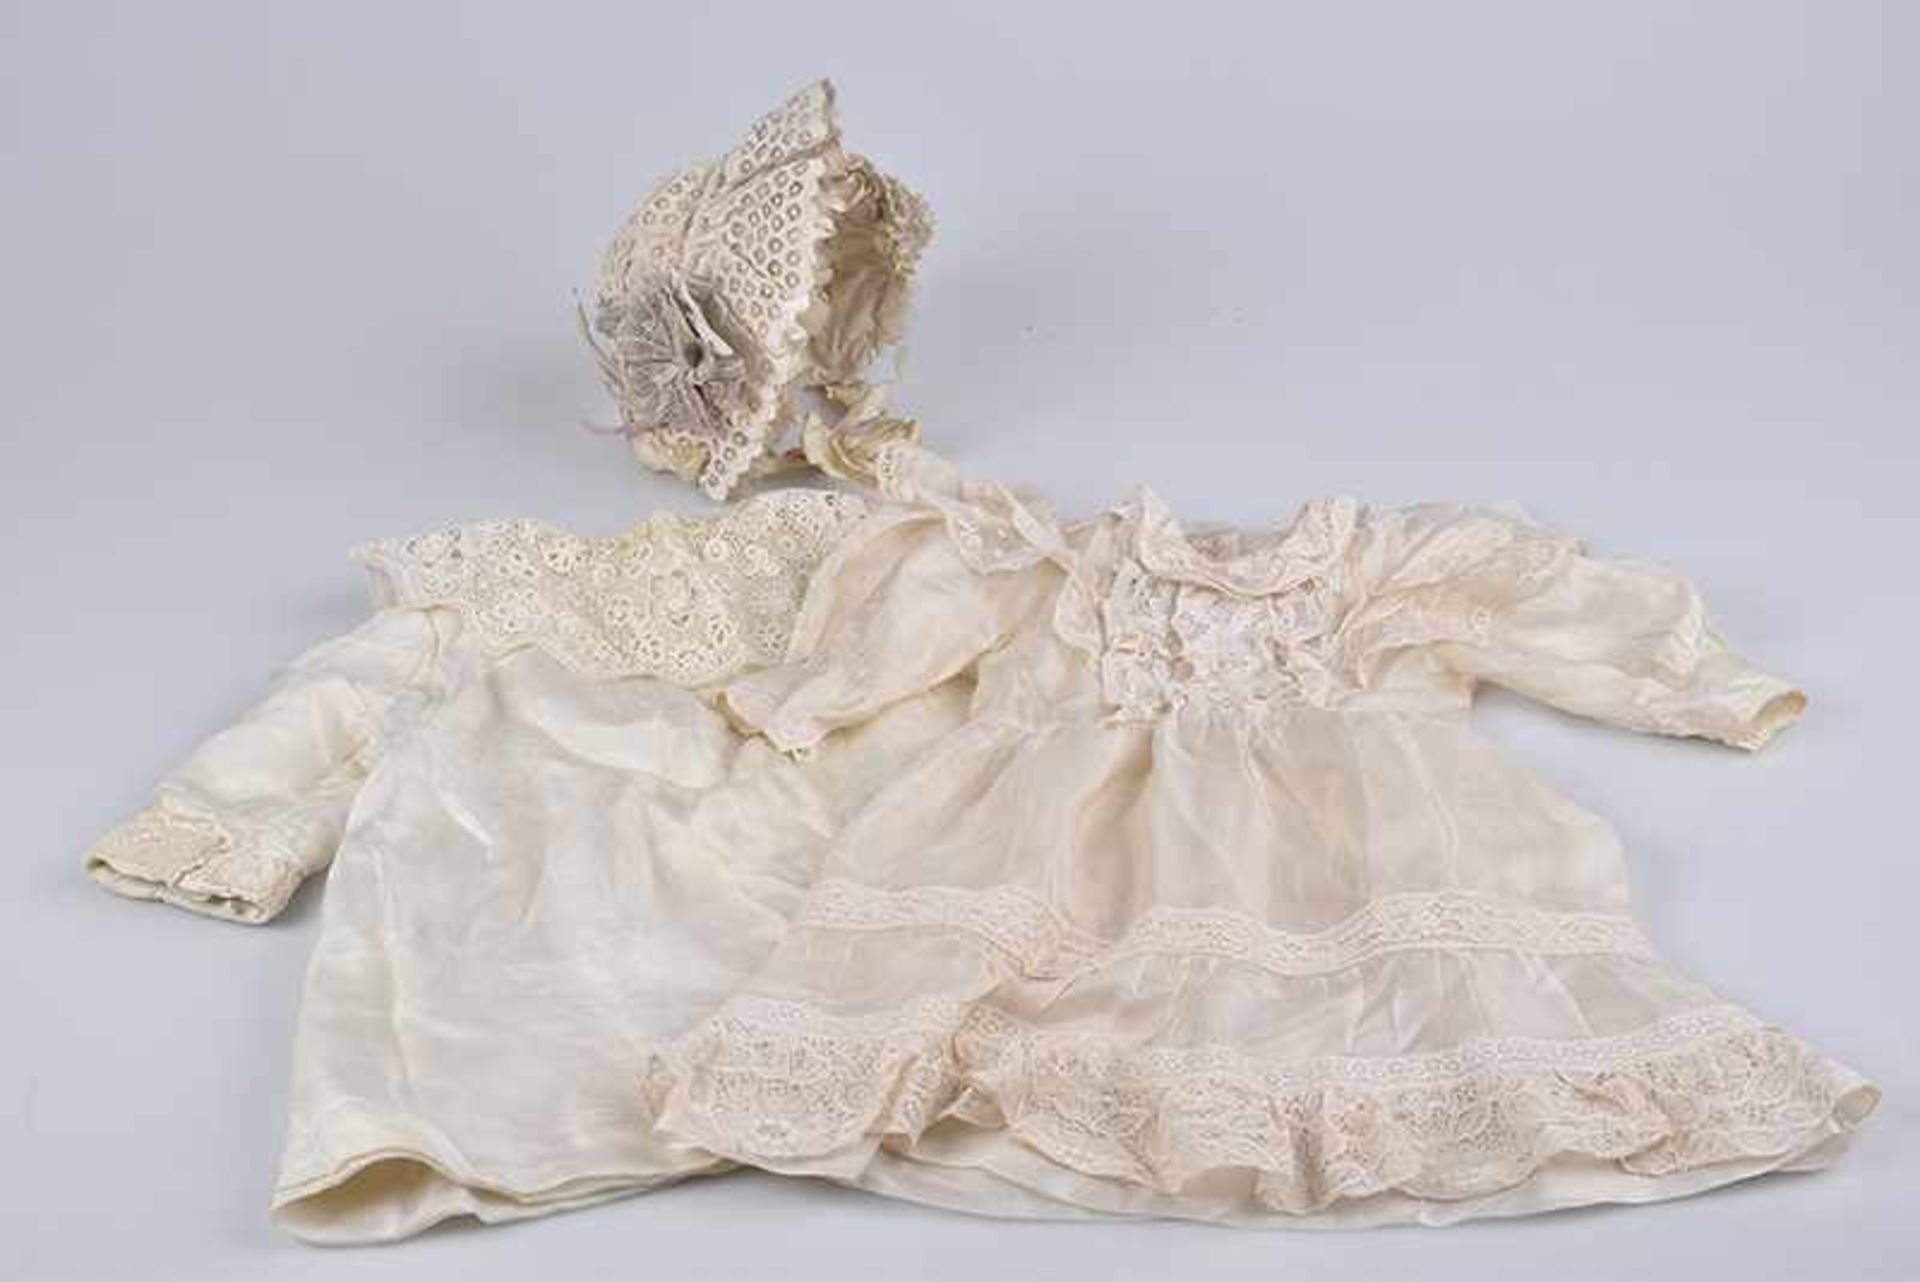 Feines Puppenkleid mit Mantel und Haube, beigefarbenes Kleid aus feiner Seide mit Spitze, L ca. 35